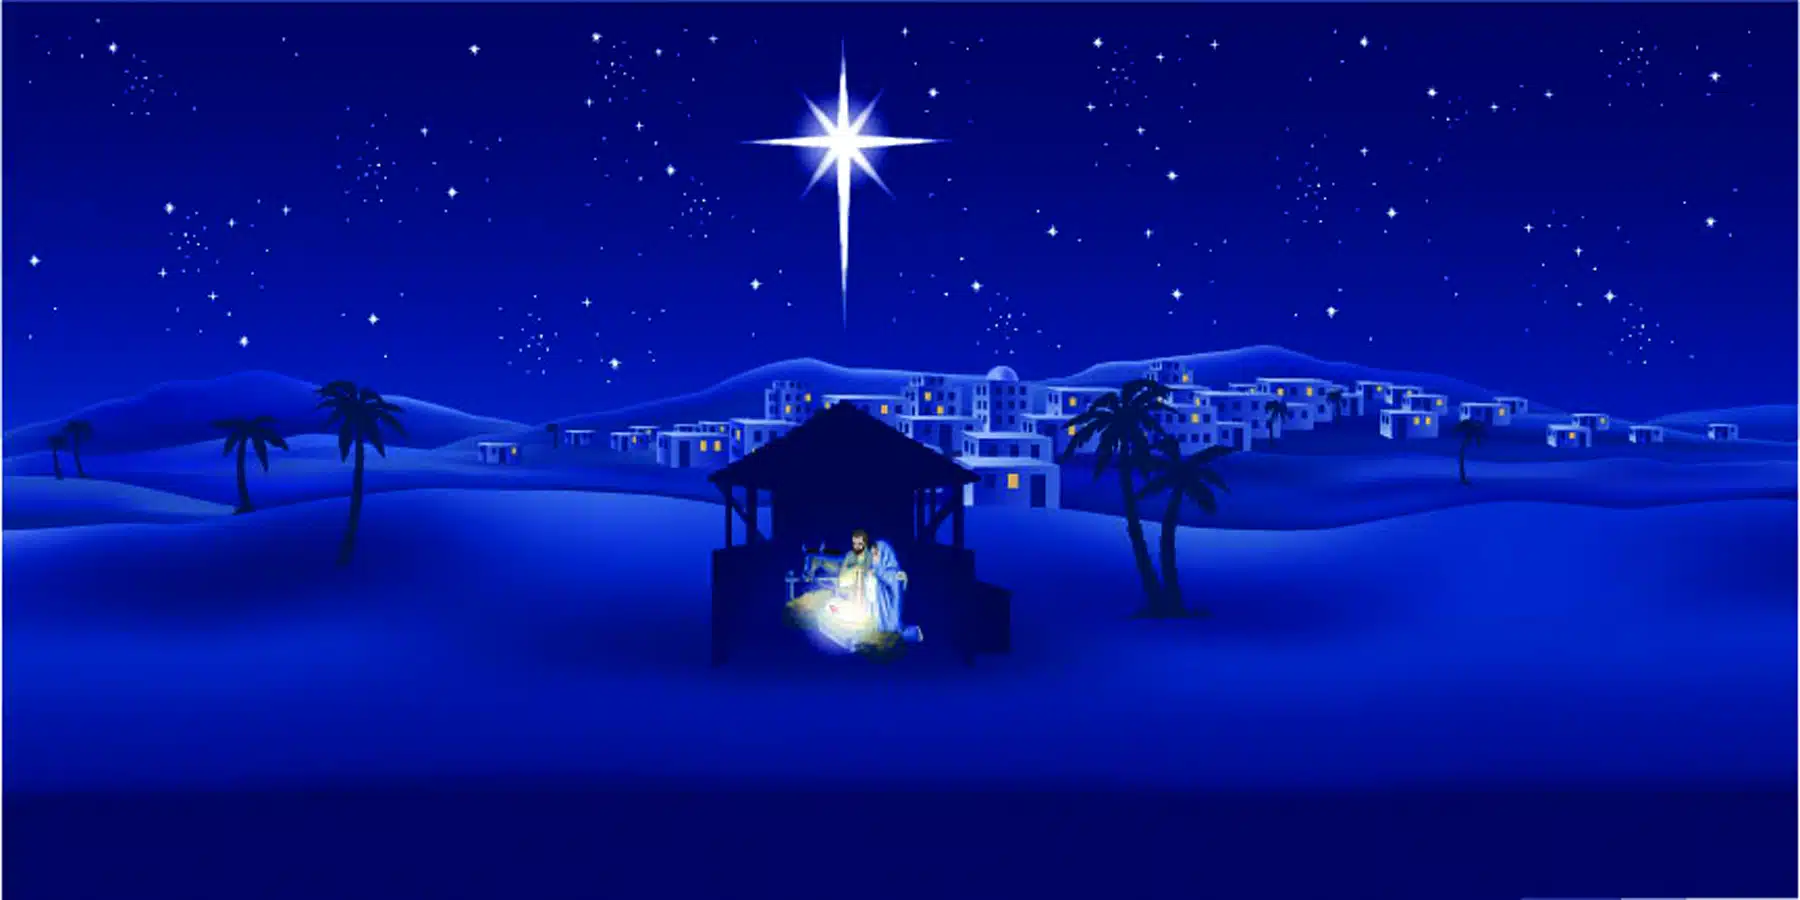 ولادة المسيح المذكورة في الأناجيل وتناسقها وتوافقها مع التاريخ والمؤرخين​ - ماي روك (منتديات الكنيسة العربية)